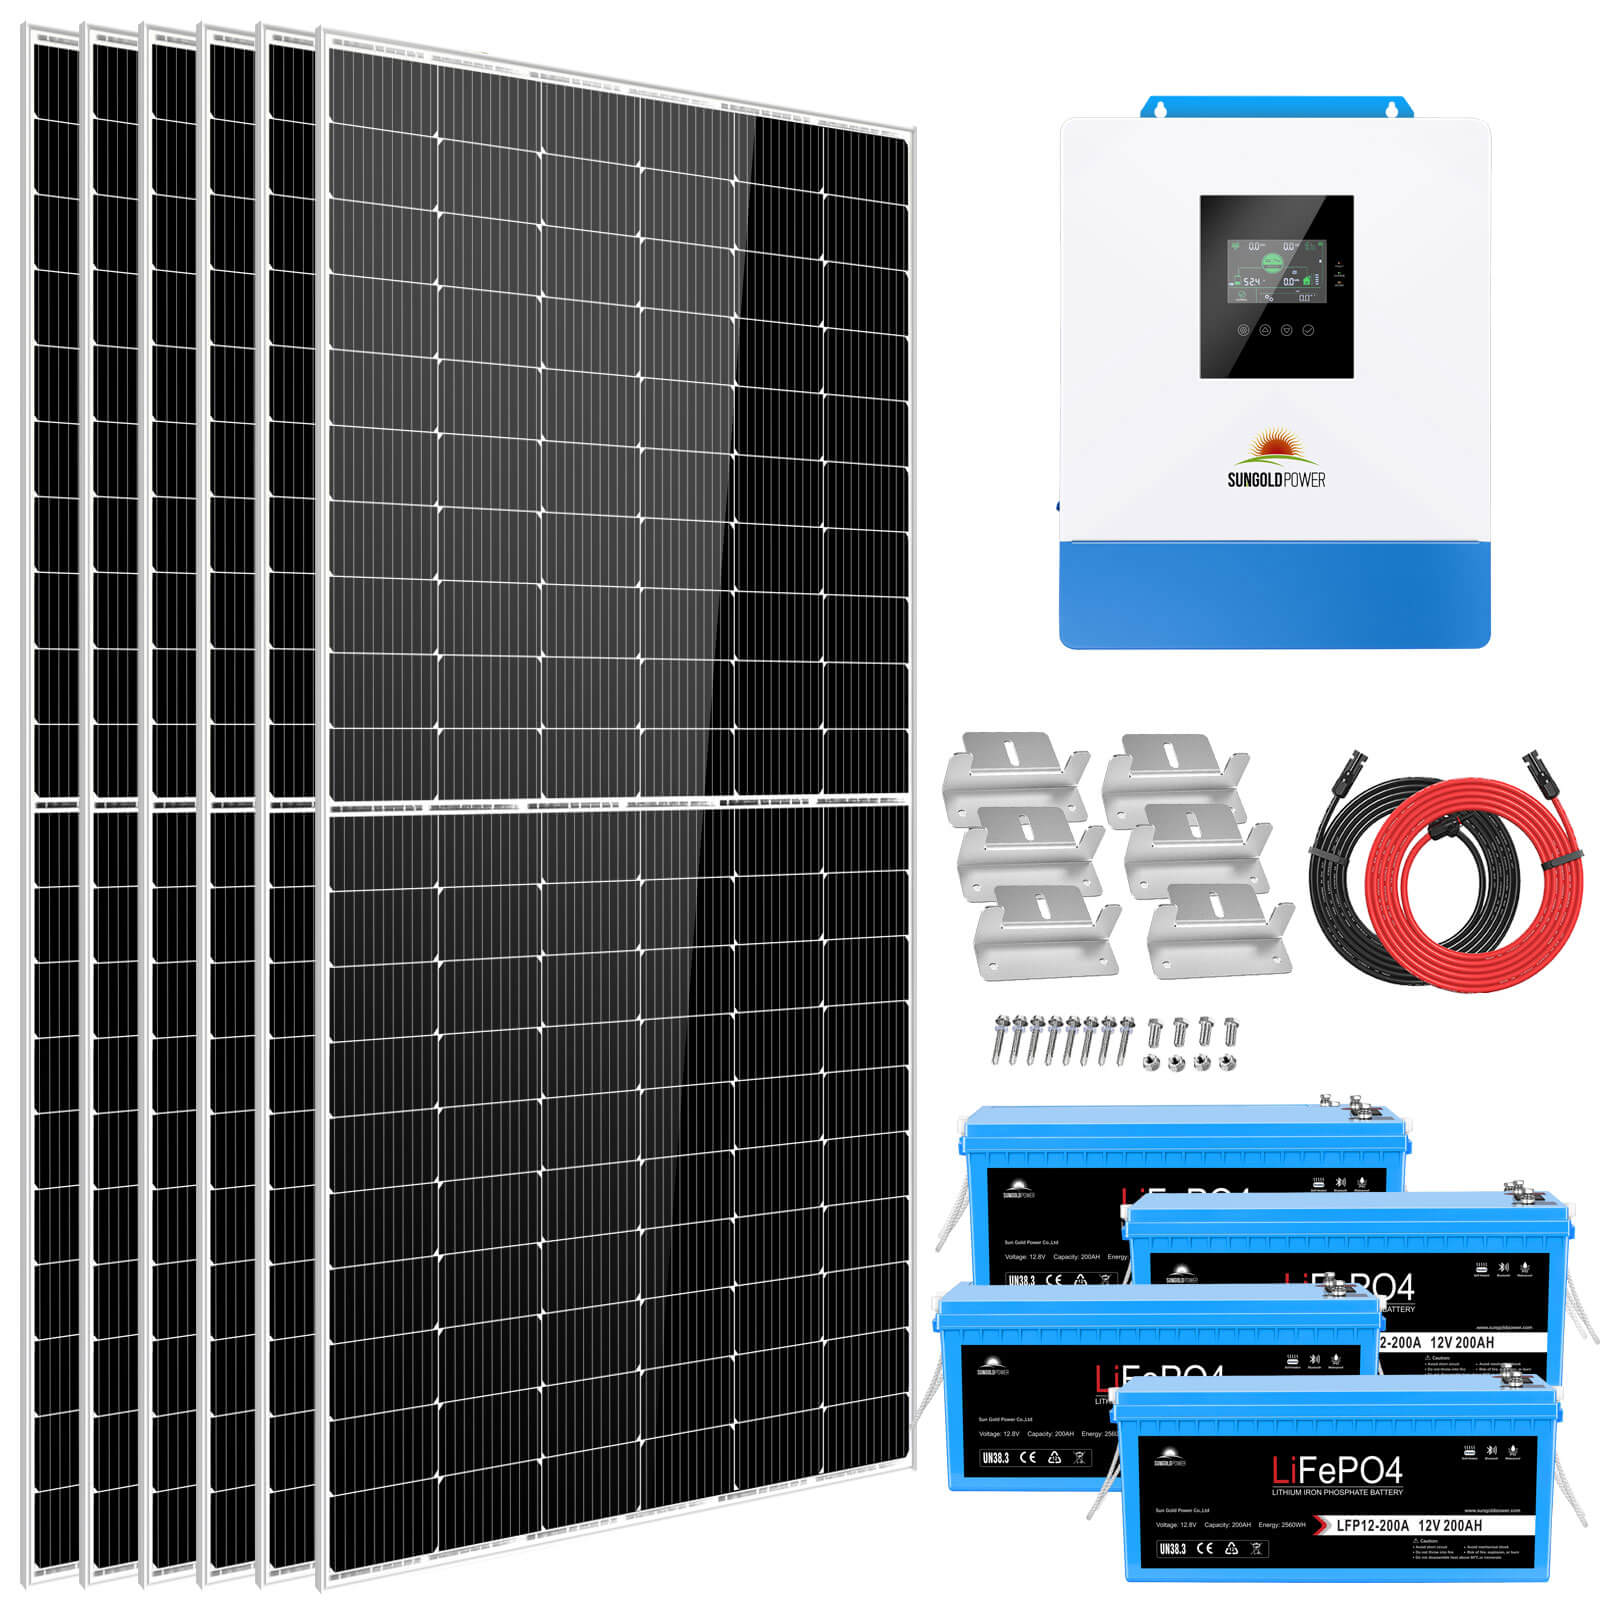 Solar Kit 5000W 48V 120V output 10.24KWH Lithium Battery 2700 Watt Solar Panel SGK-5PRO SunGoldPower Off Grid Solar Kit